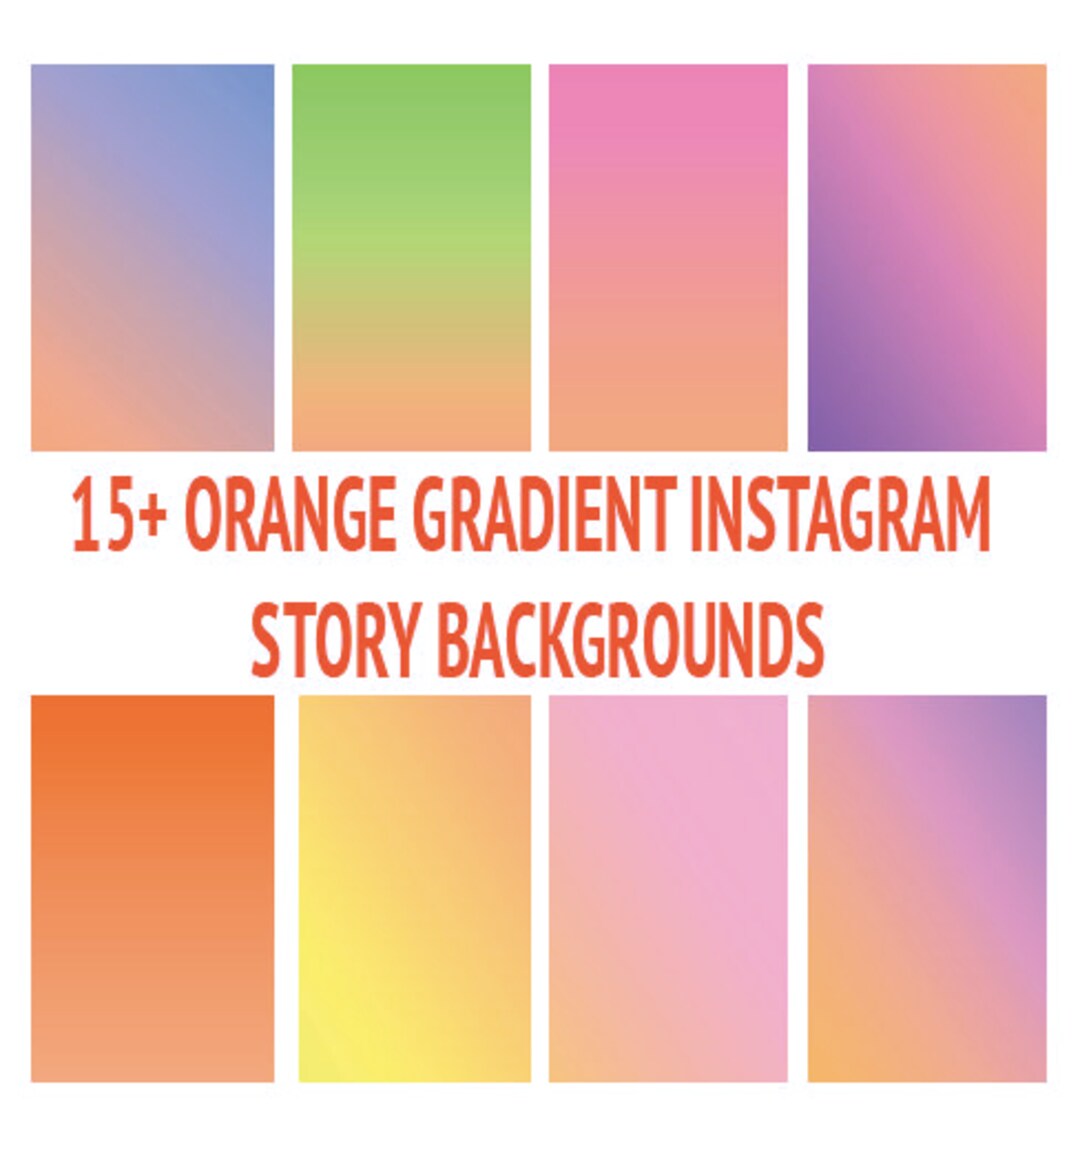 Gradient màu cam: Hãy khám phá hình ảnh đầy sáng tạo và tươi tắn với màu cam Gradient. Đây là một màu sắc tuyệt đẹp và rất độc đáo. Nếu bạn yêu thích sự đơn giản và thanh lịch, thì đây là màu sắc hoàn hảo cho bạn. Hãy xem ngay để nhận được trải nghiệm tuyệt vời nhất.